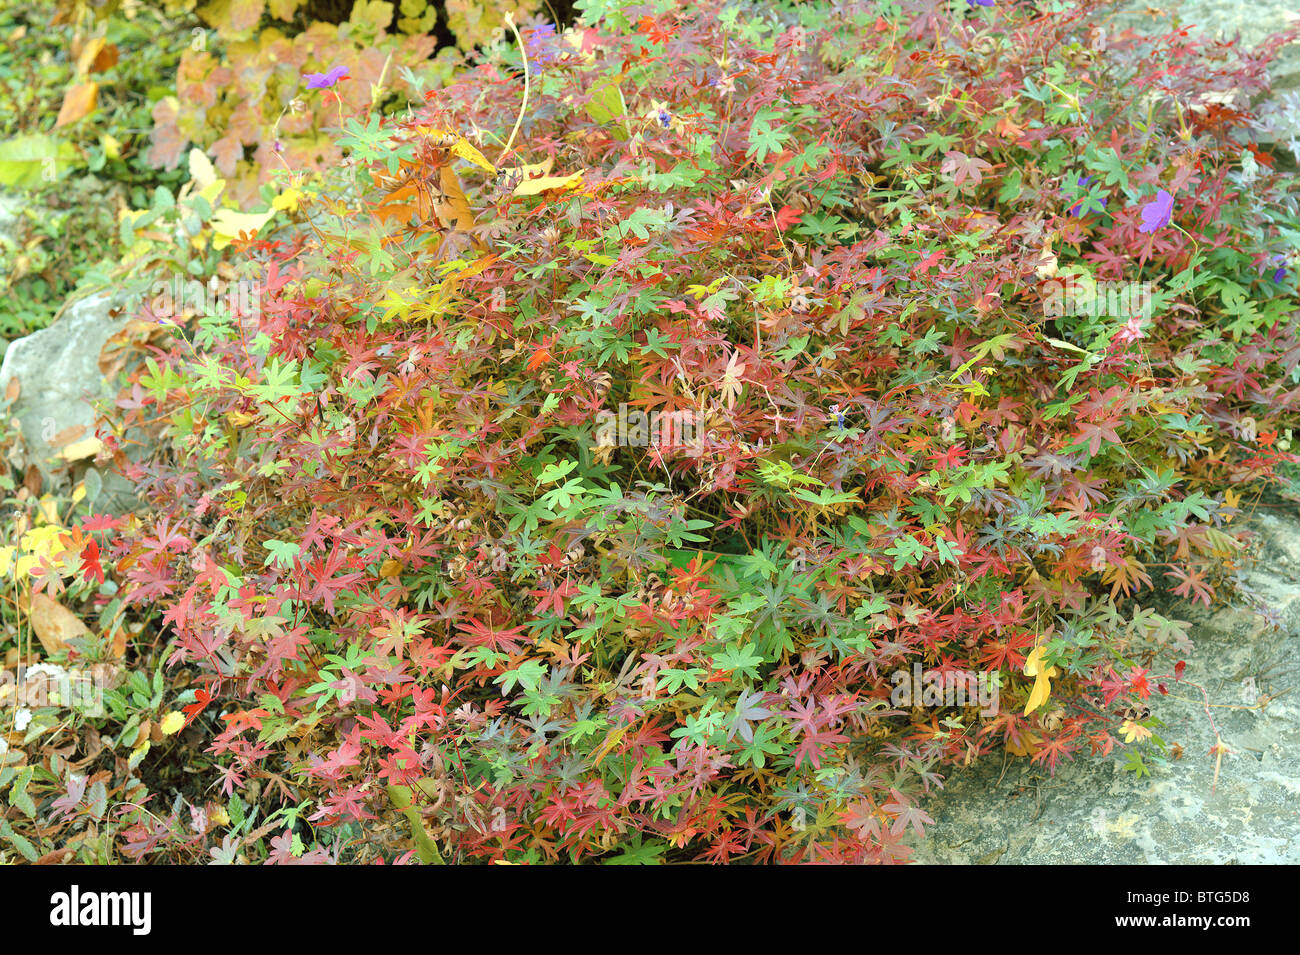 Geranium leaves turning red in autumn Geranium soboliferum Stock Photo